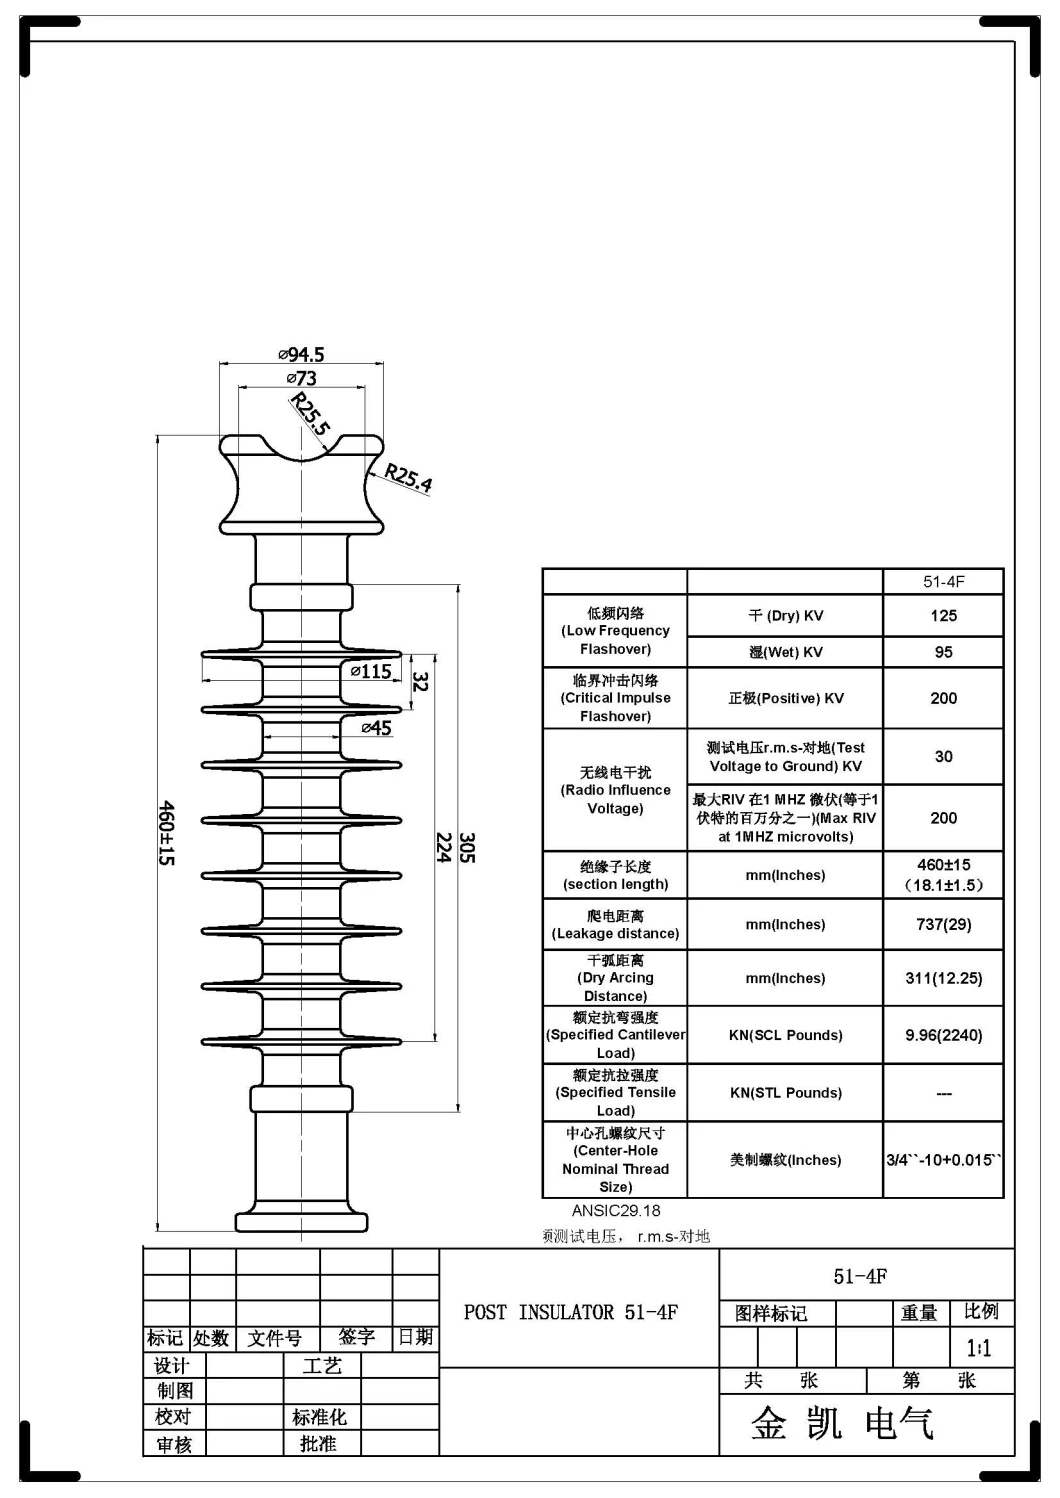 51-4f Line Post Insulator/Polymer Insulator